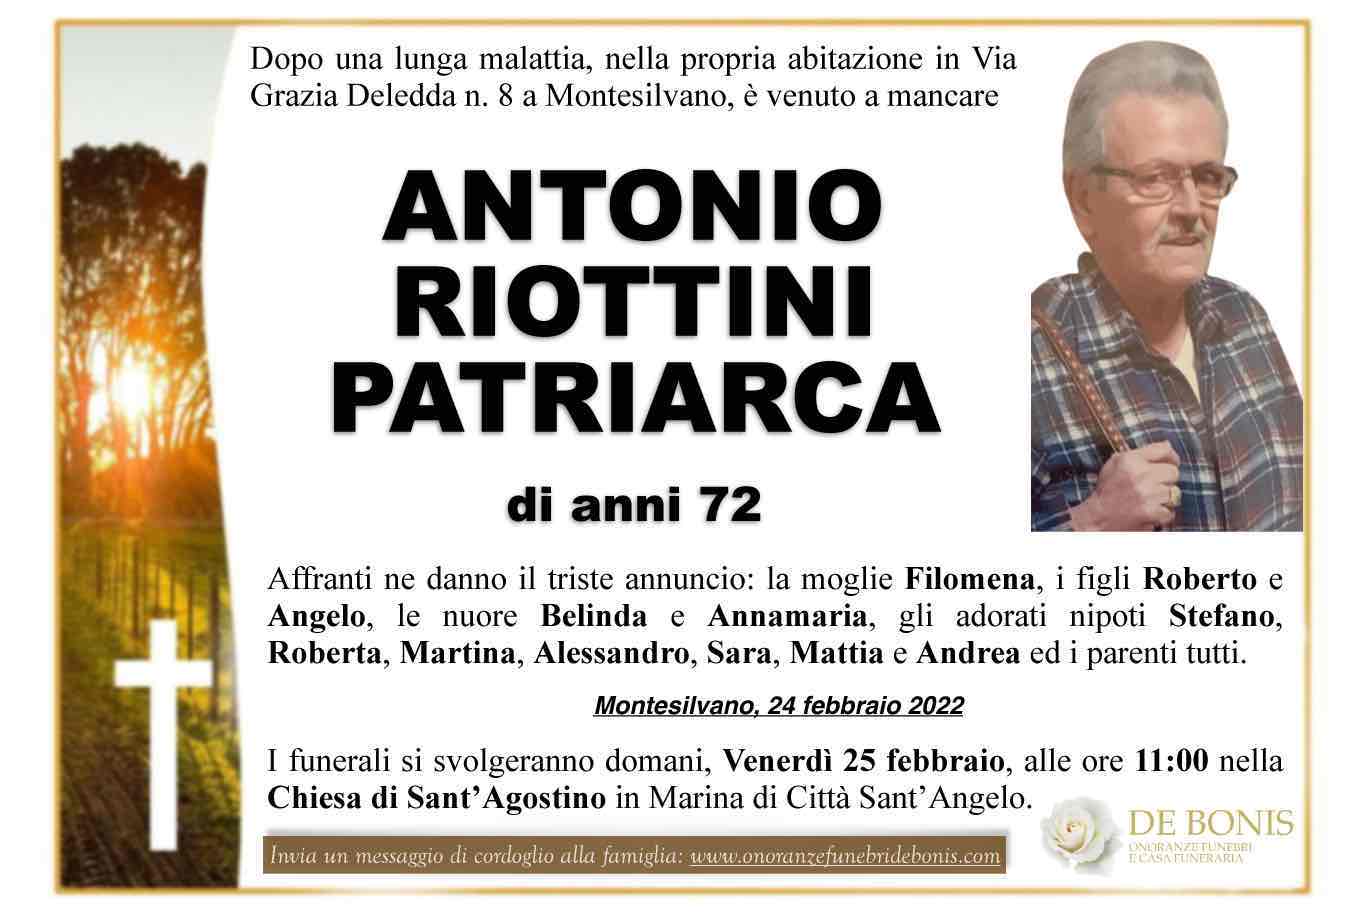 Antonio Riottini Patriarca